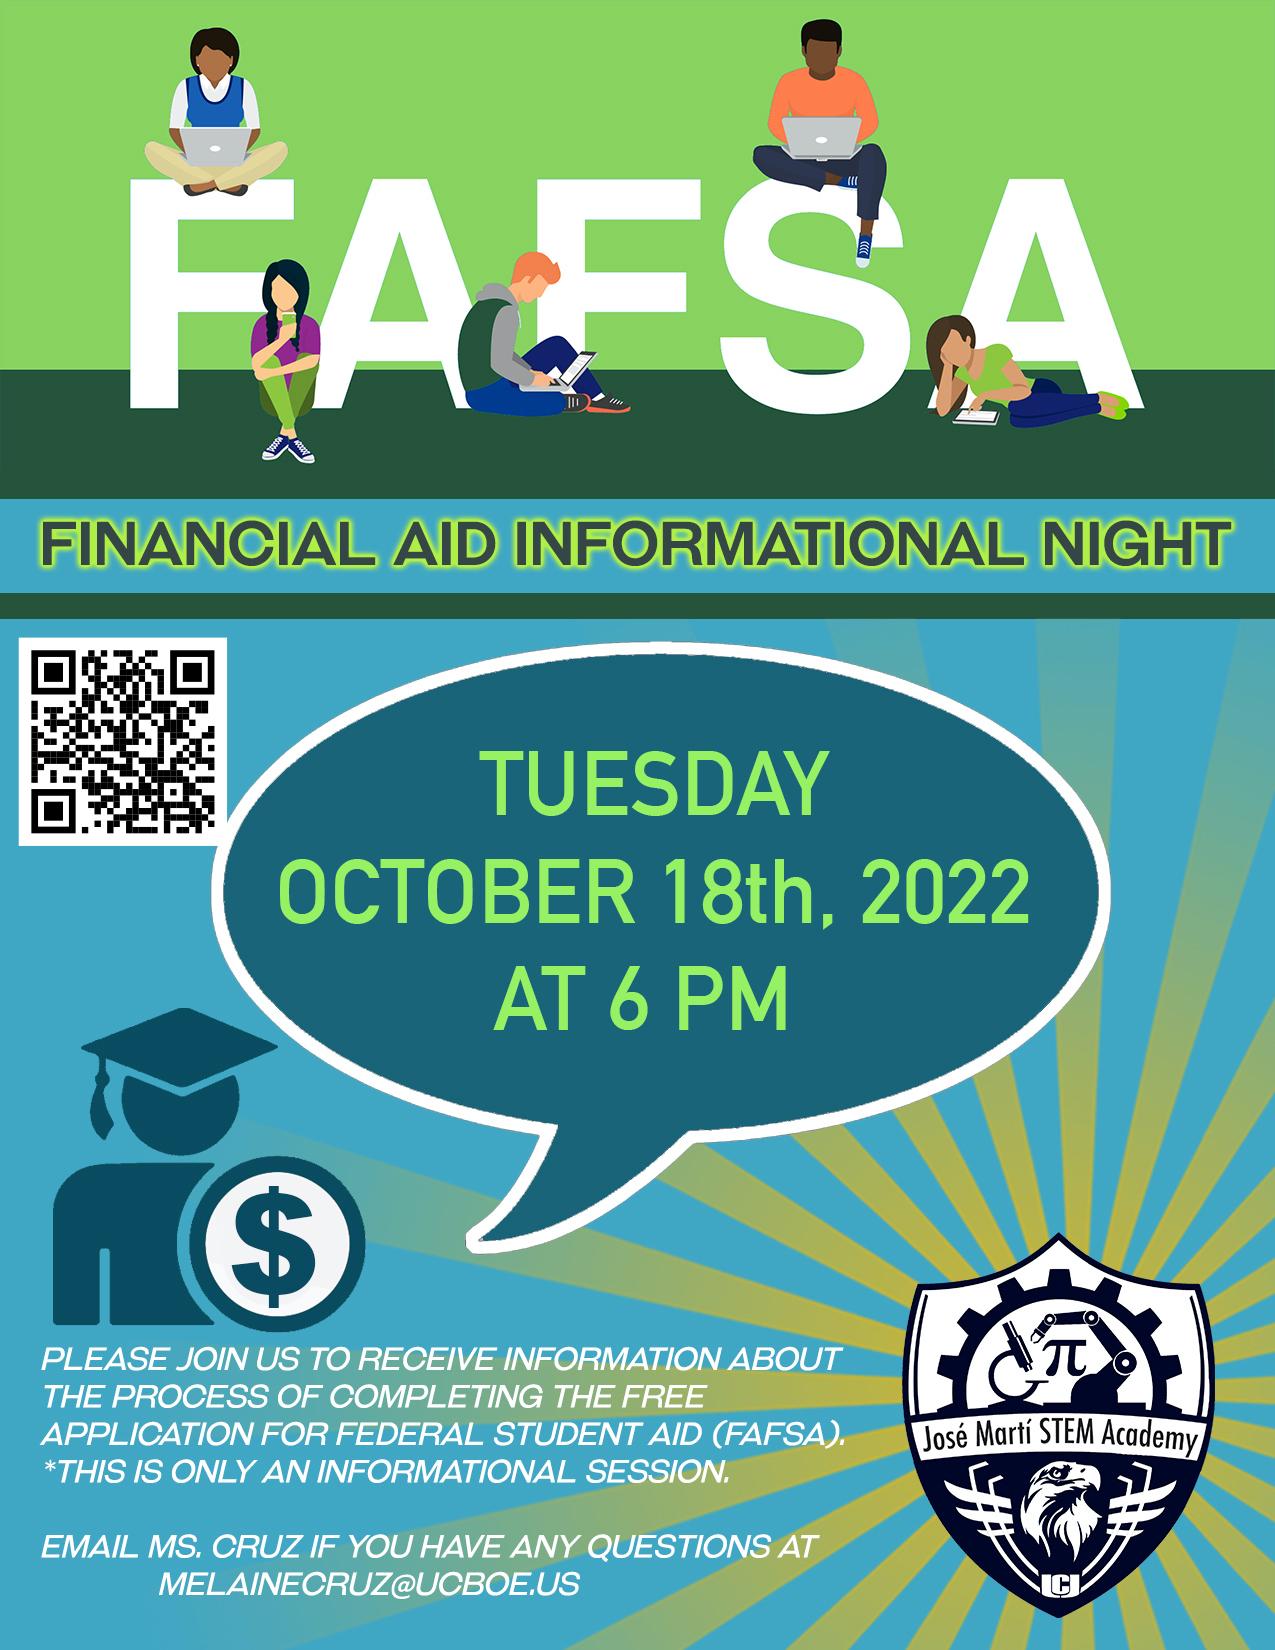 FAFSA Financial Aid Informational Night at the José Martí Freshman Academy